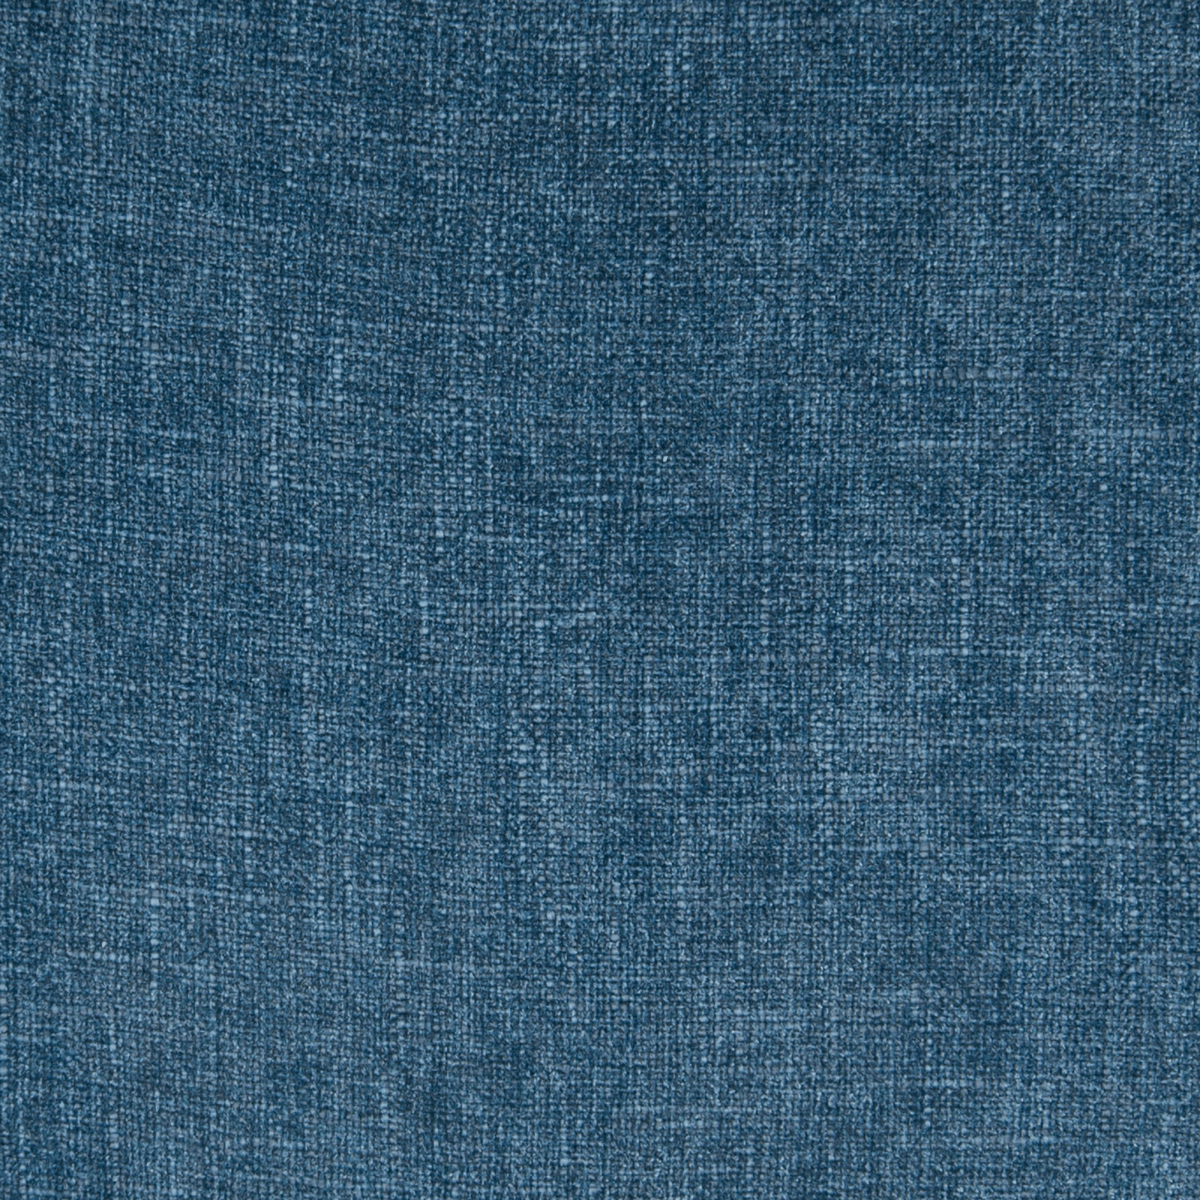 Luxor B3829 Ocean - Atlanta Fabrics